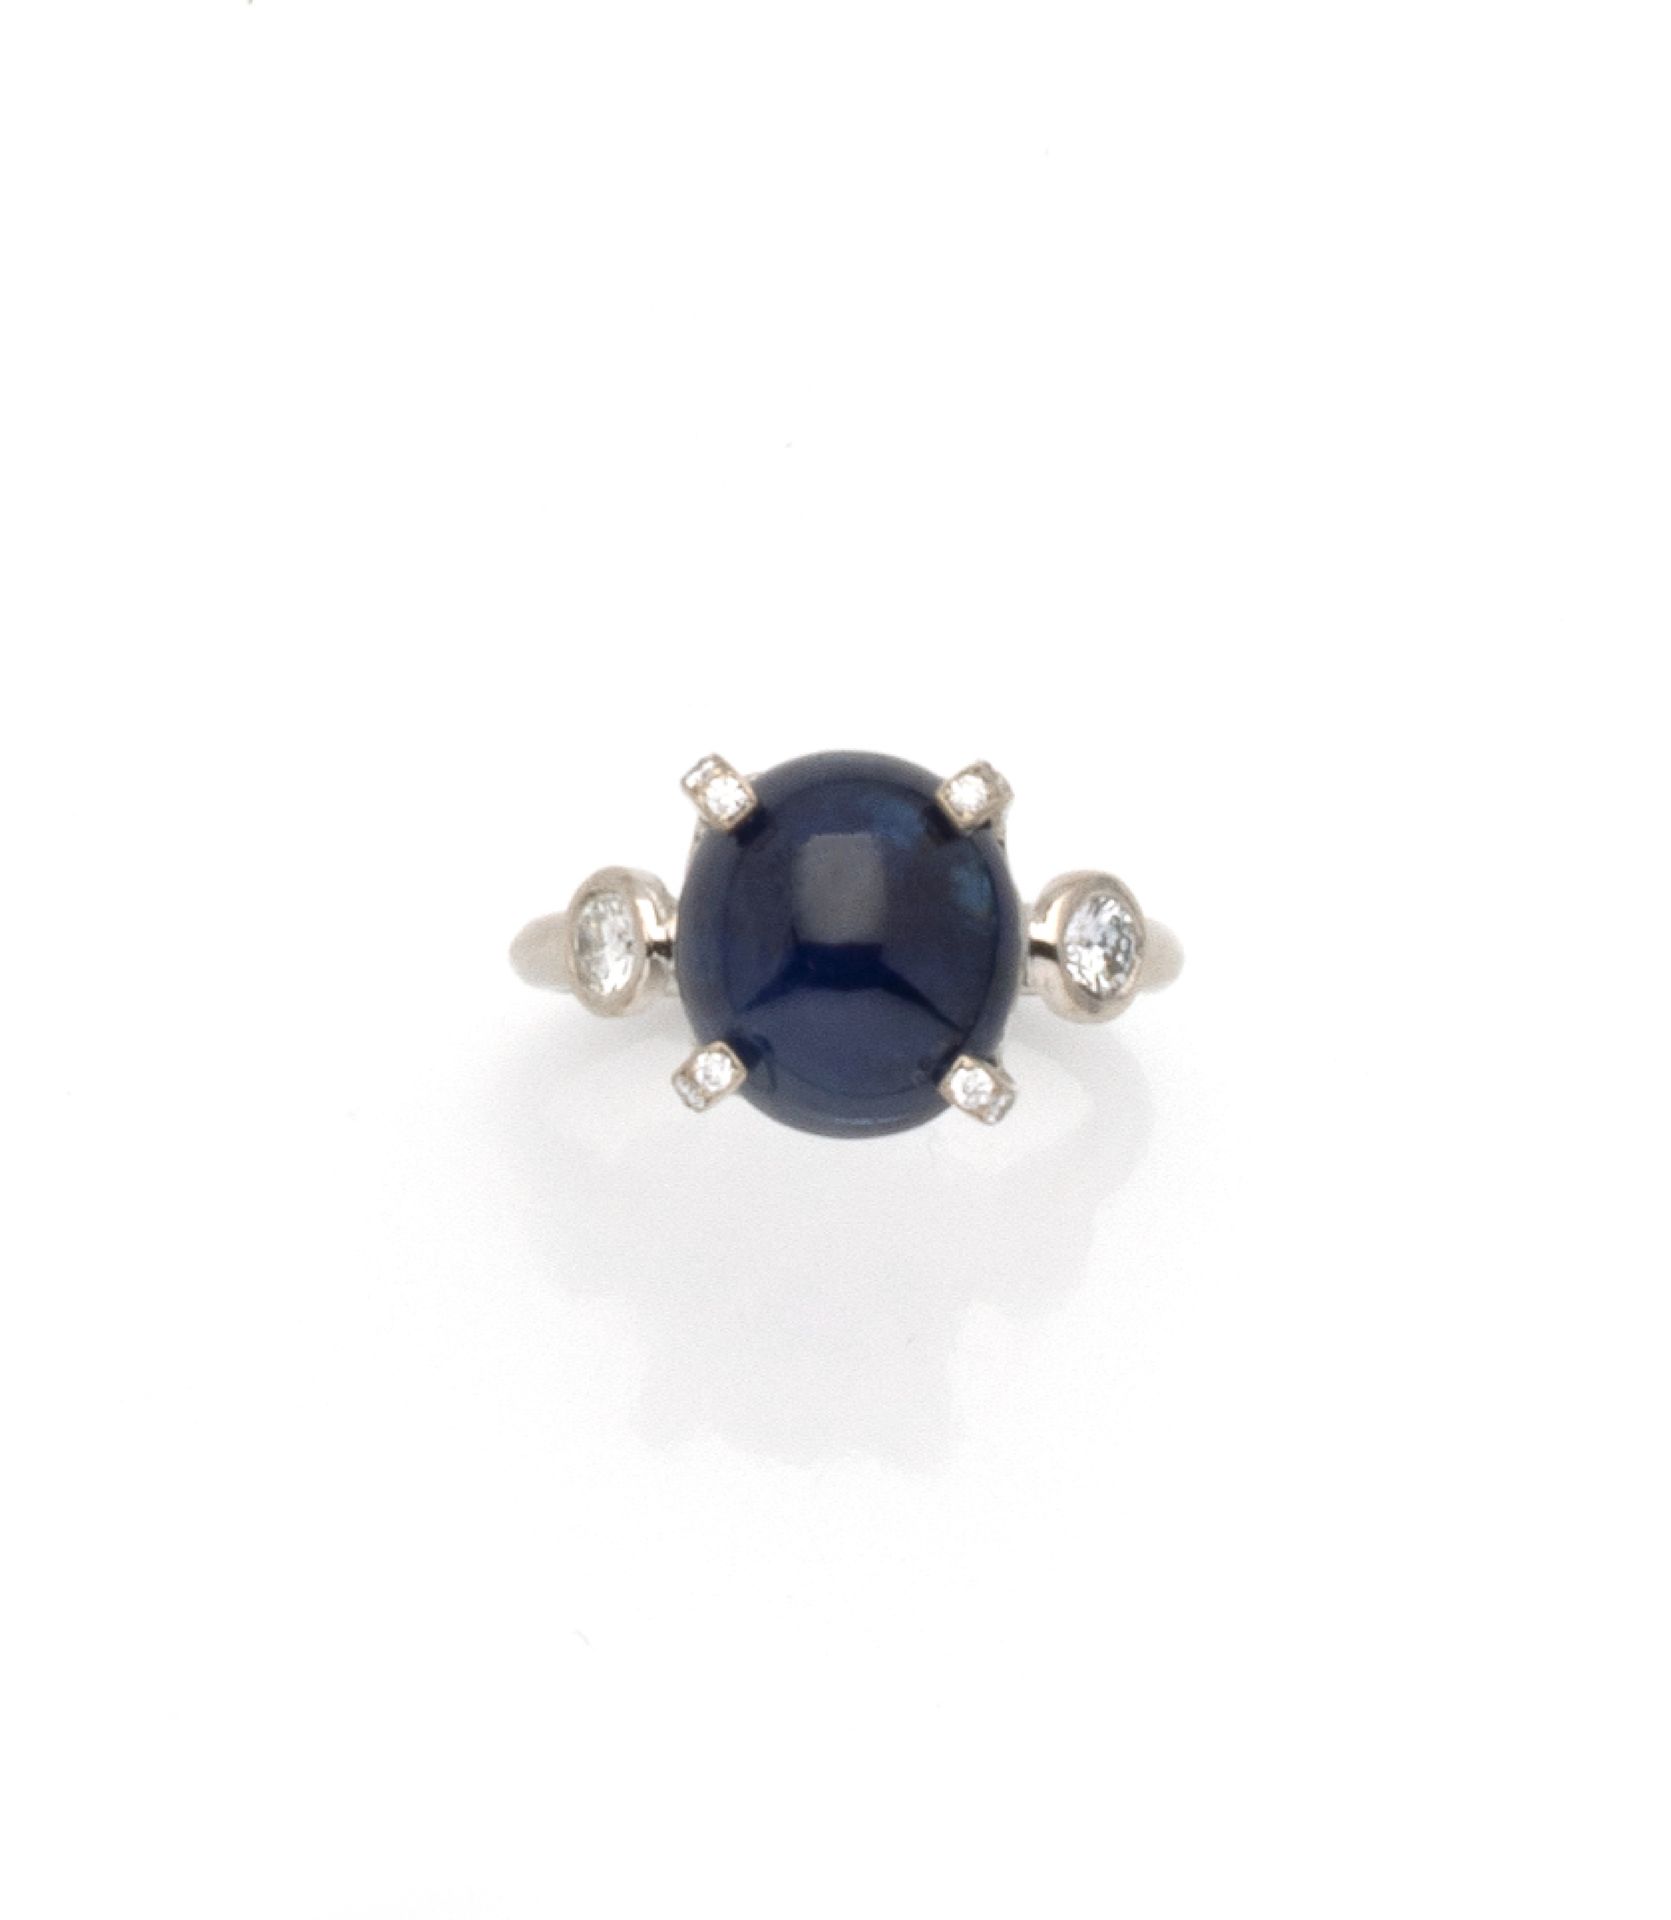 Null 18K（750/1000）白金戒指，镶嵌着一颗凸圆形蓝宝石，重约7克拉，镶嵌的爪子上各点缀着三颗明亮式切割钻石。蓝宝石上镶嵌着两颗明亮式切割钻石，重约&hellip;